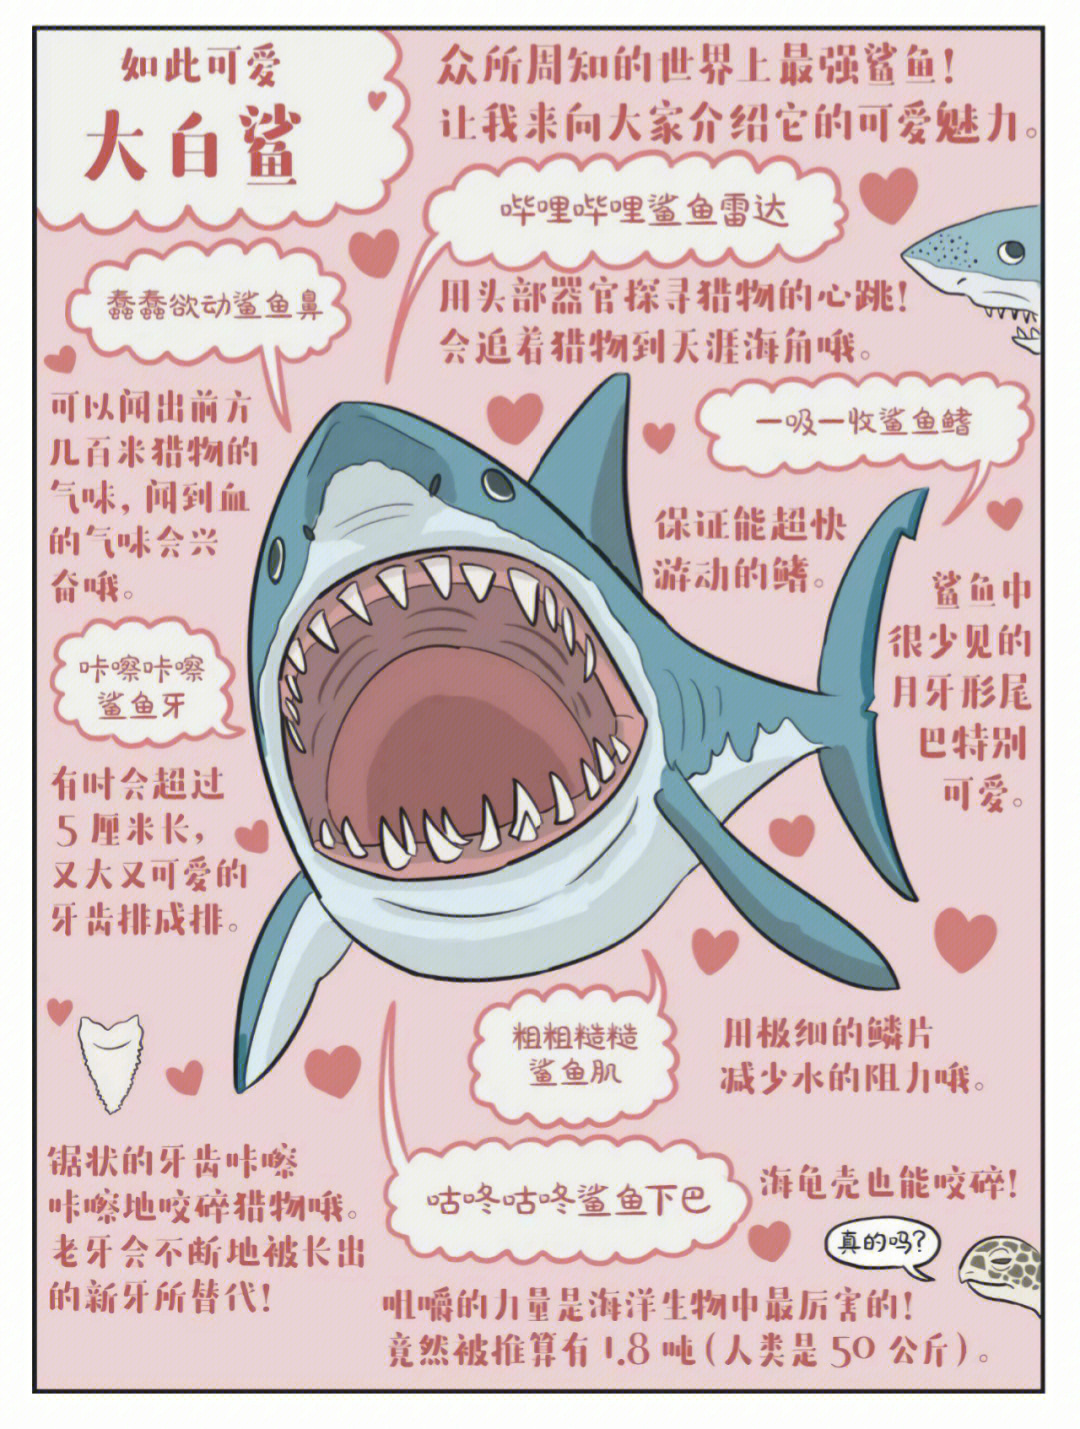 如此可爱大白鲨00鼠鲨科 噬人鲨属中文学名:噬人鲨拉丁学名